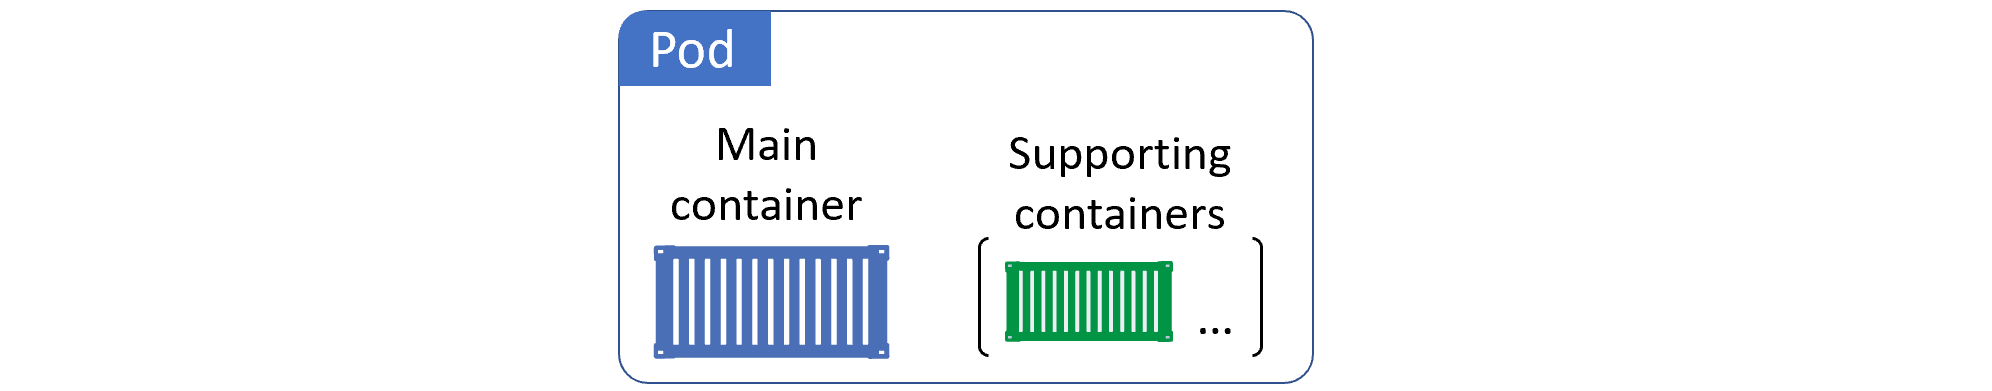 A multi-container Pod